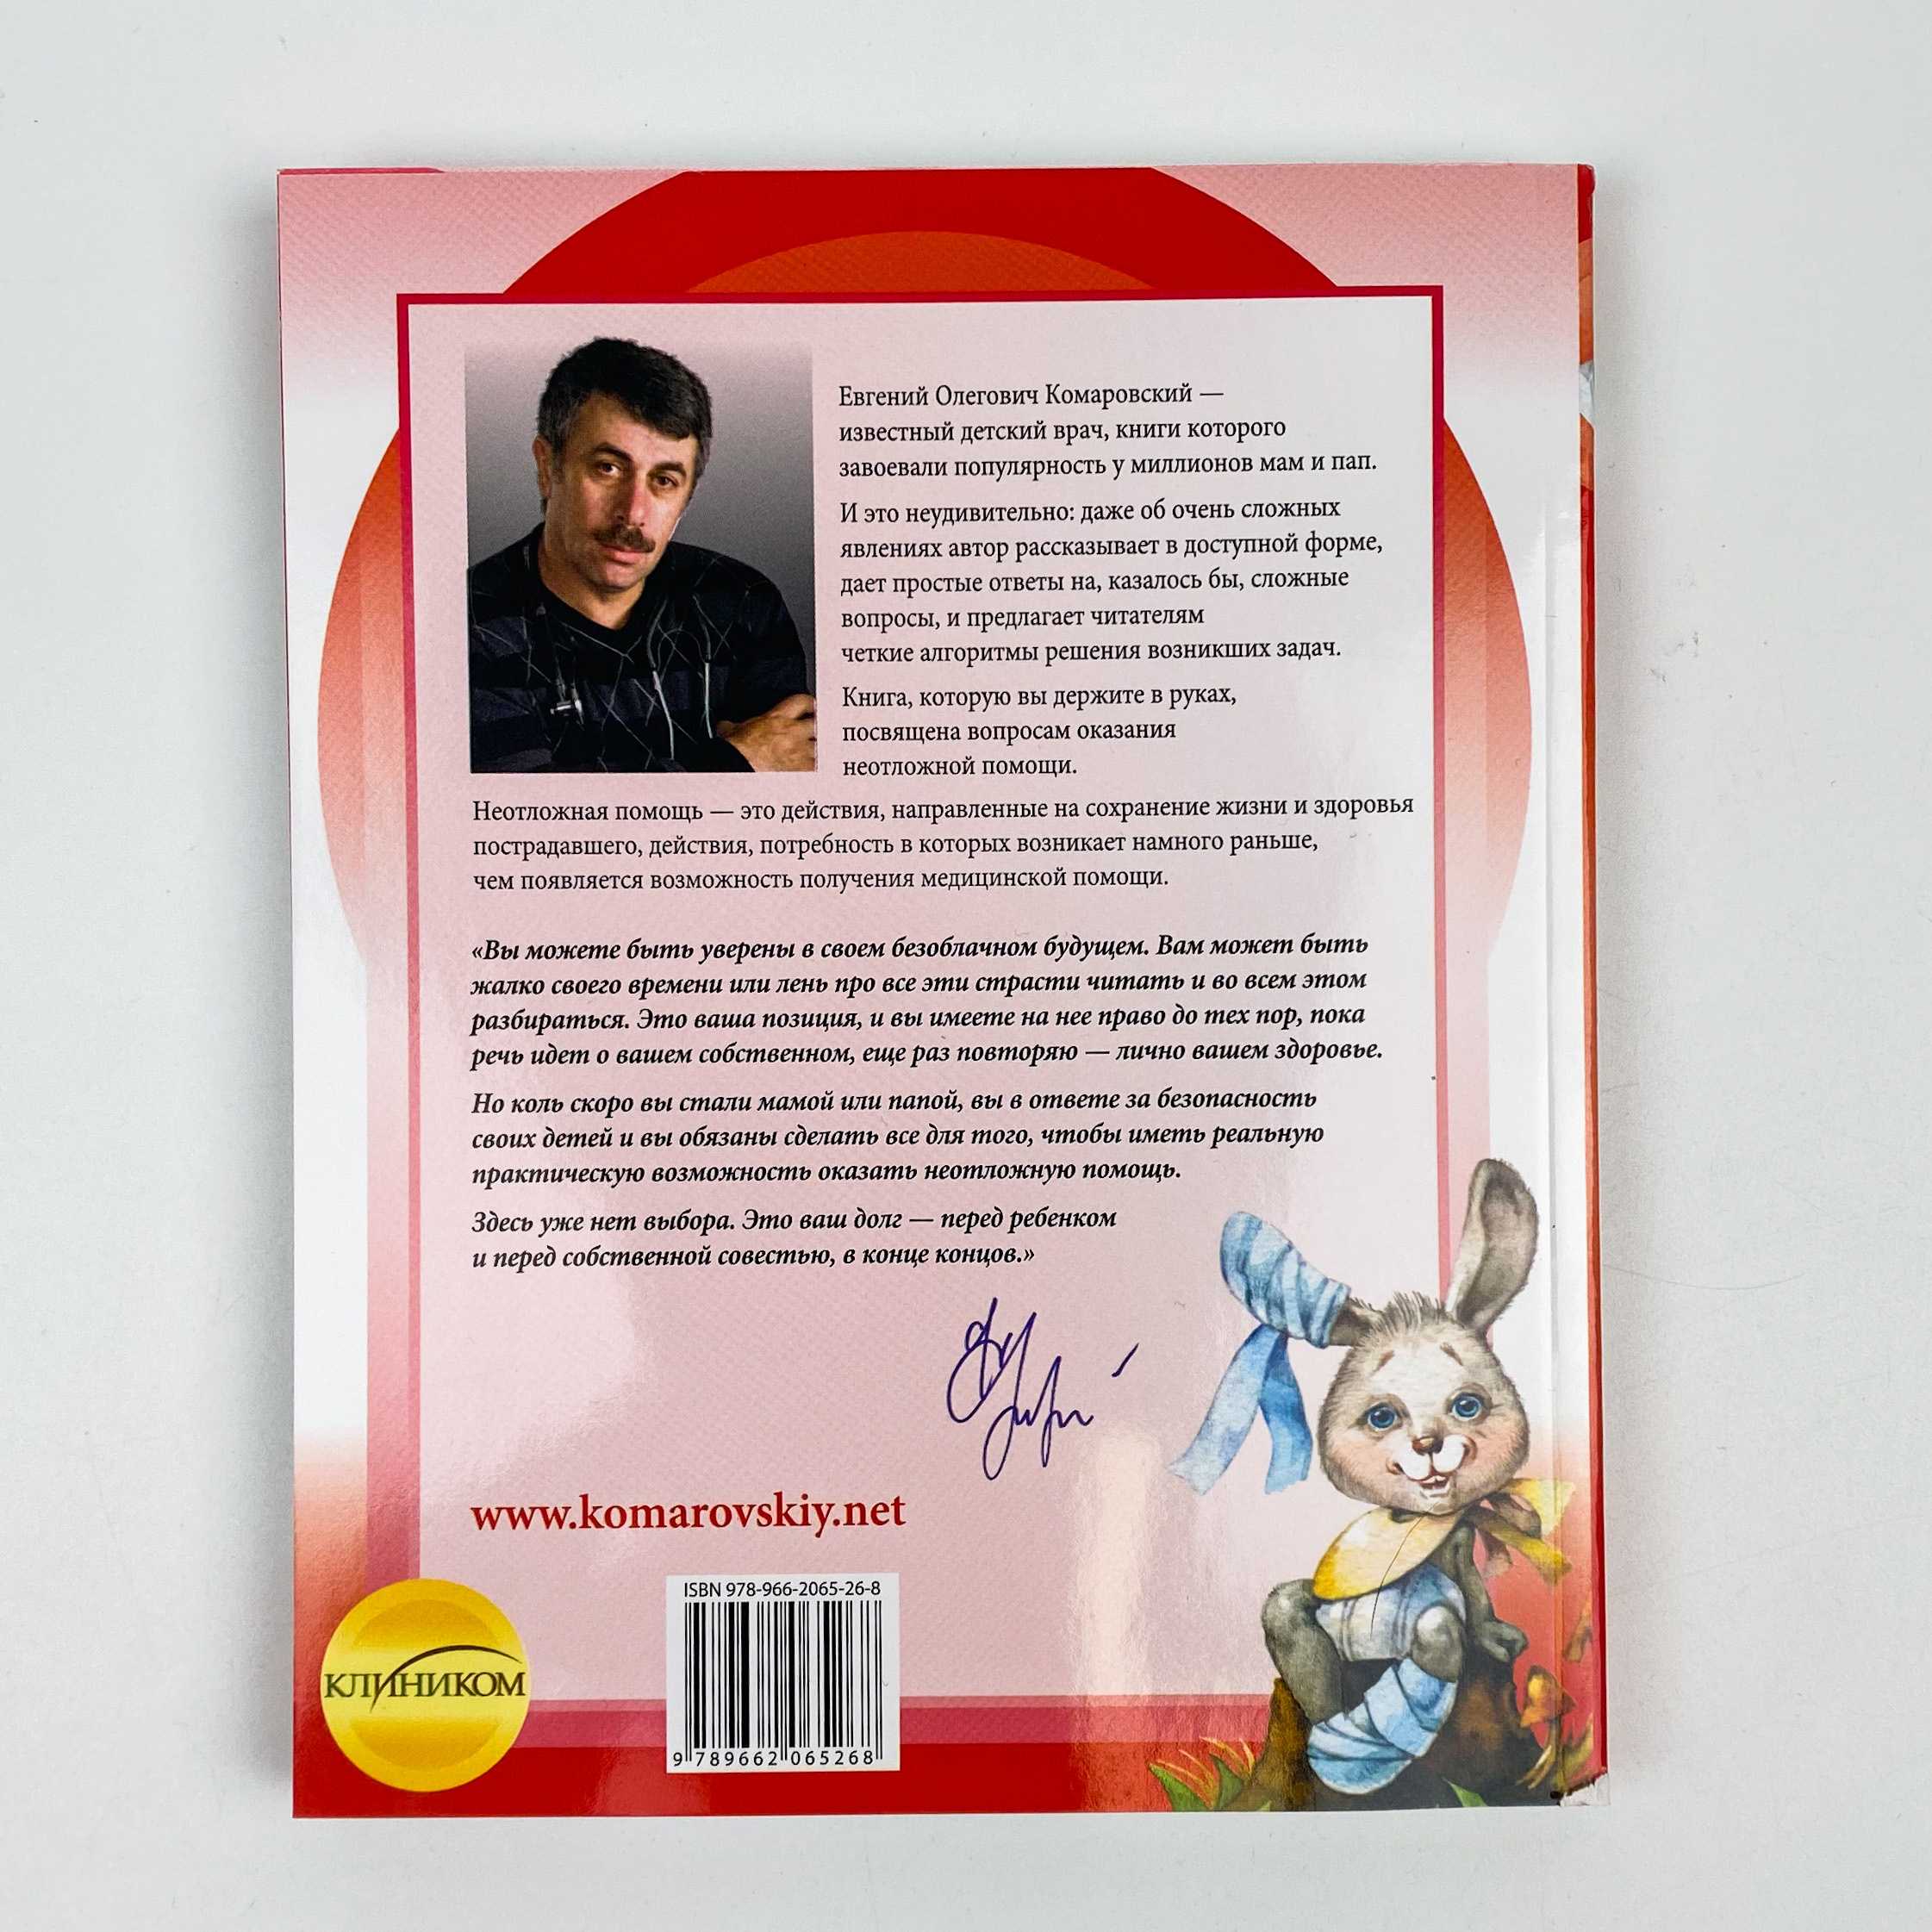 Евгений комаровский – биография, личная жизнь, фото, новости, дети, украина, книги, родители, здоровье ребенка 2022 - 24сми